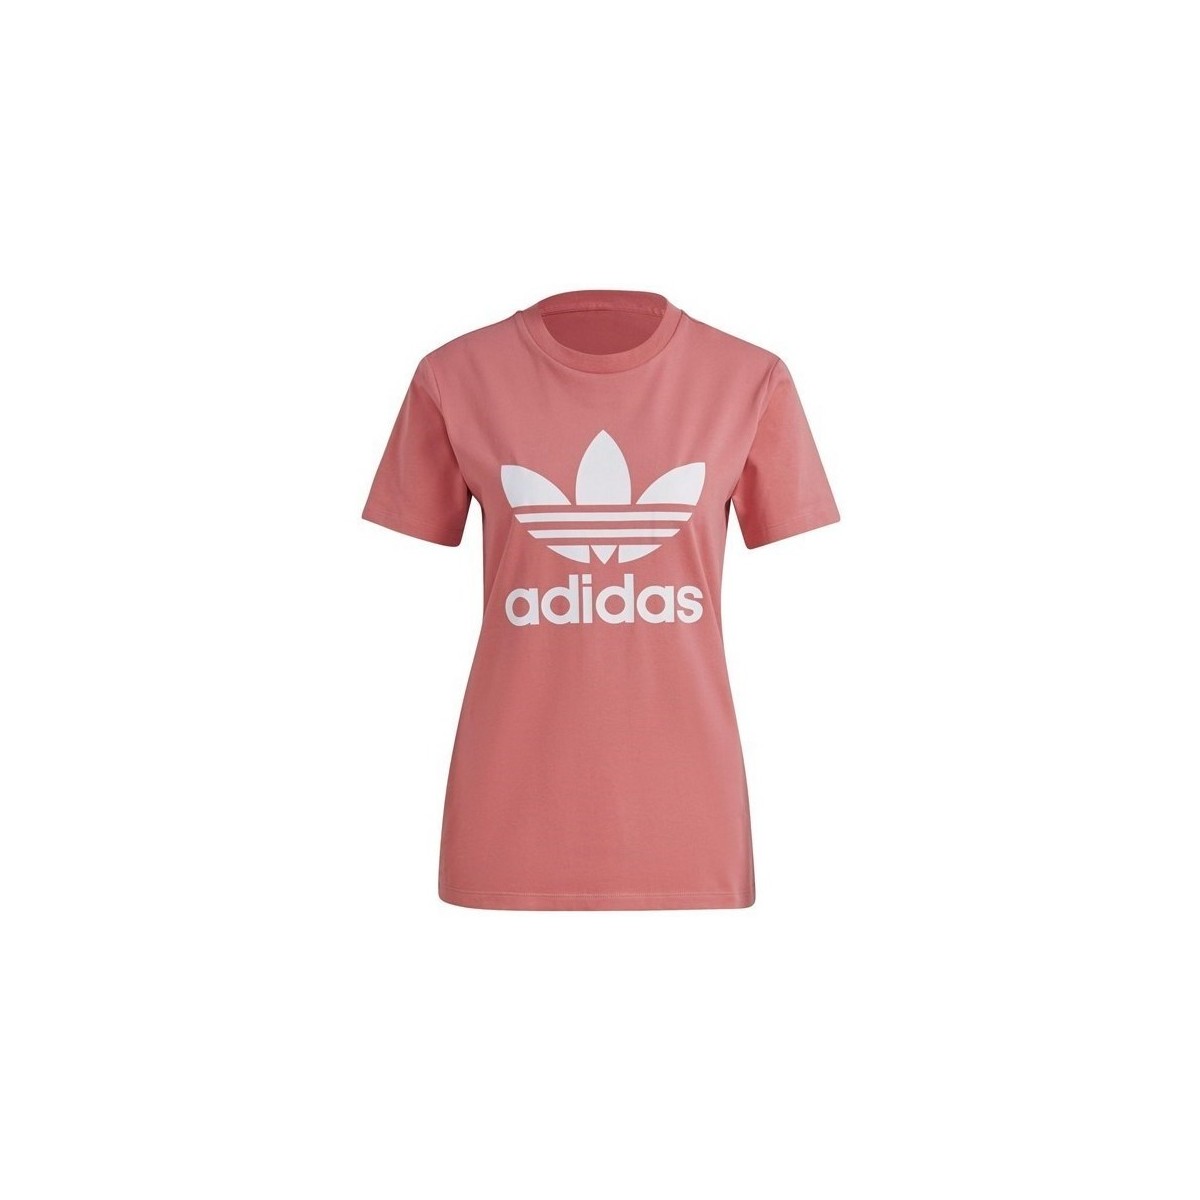 Oblačila Ženske Majice s kratkimi rokavi adidas Originals W 3STRIPES 21 Rožnata